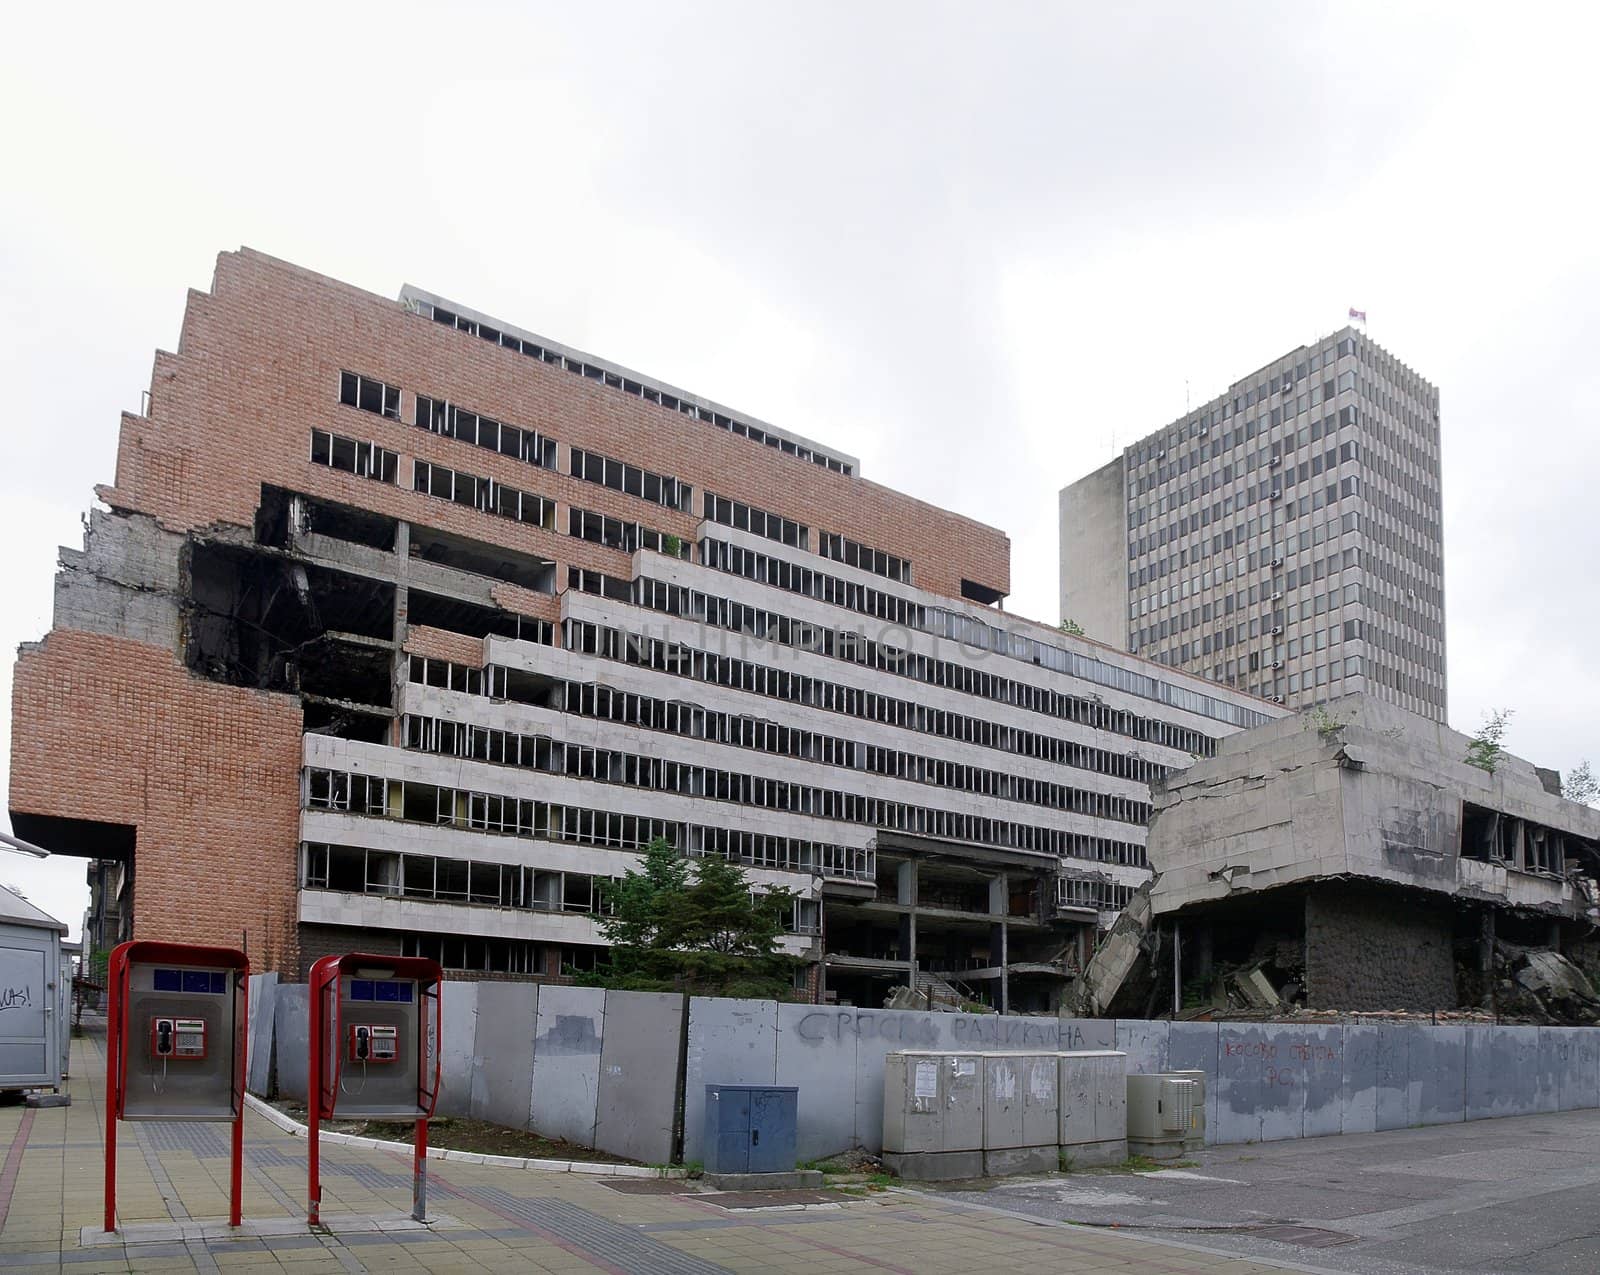 Disturbed building in Belgrad, Serbia by Stoyanov